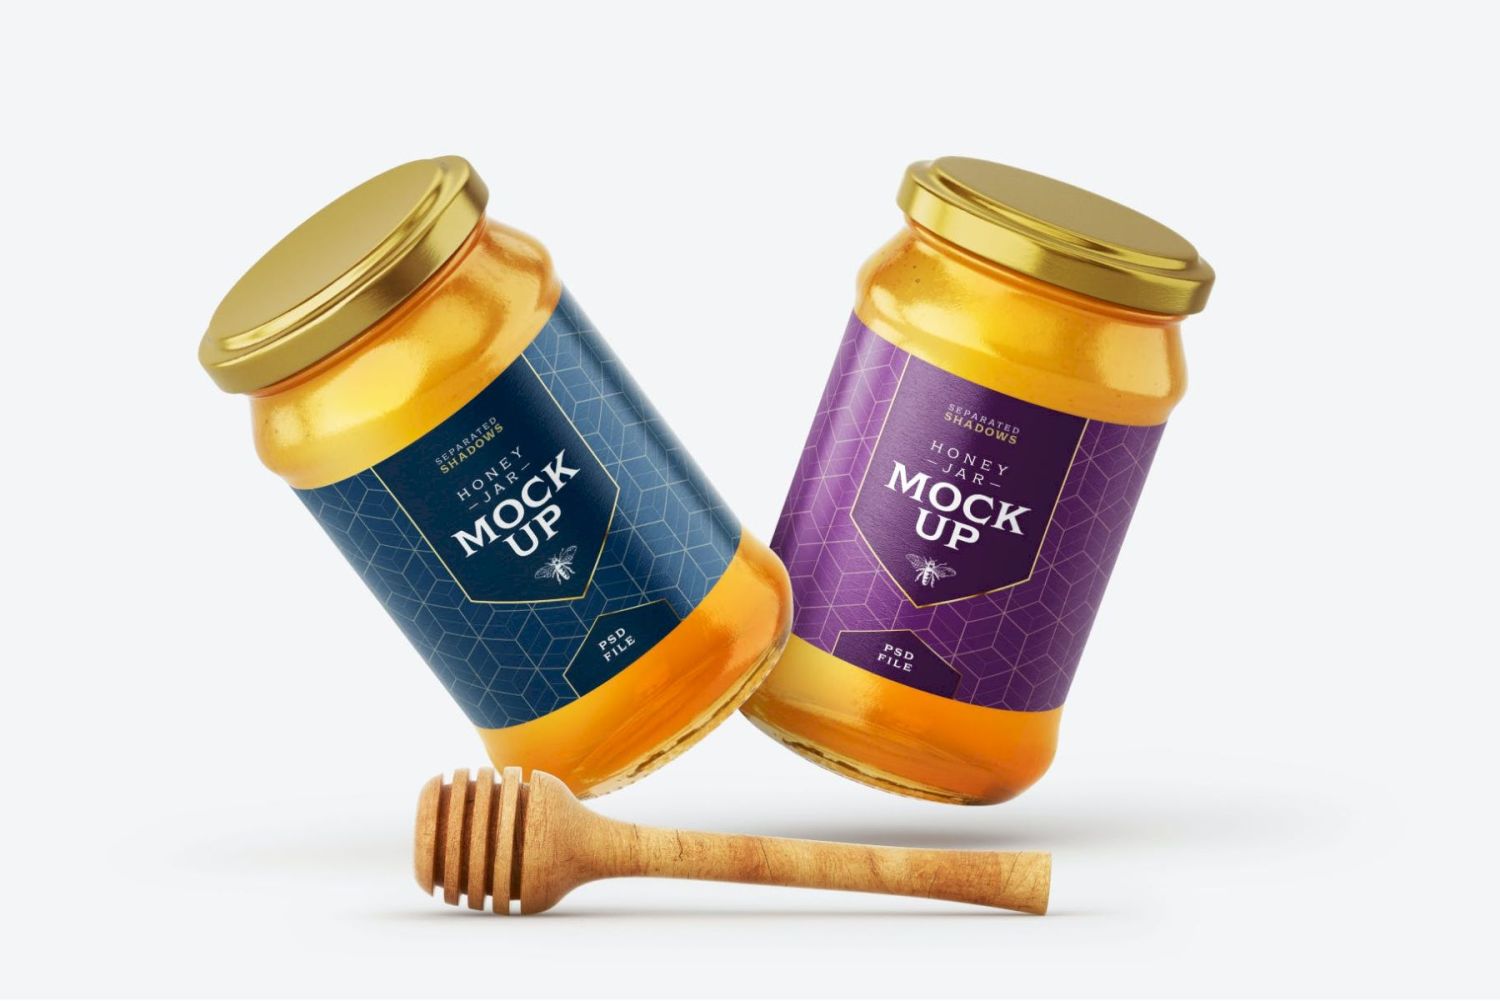 带北斗的蜂蜜罐样机套装 Honey Jar Mockup Set With Dipper插图5